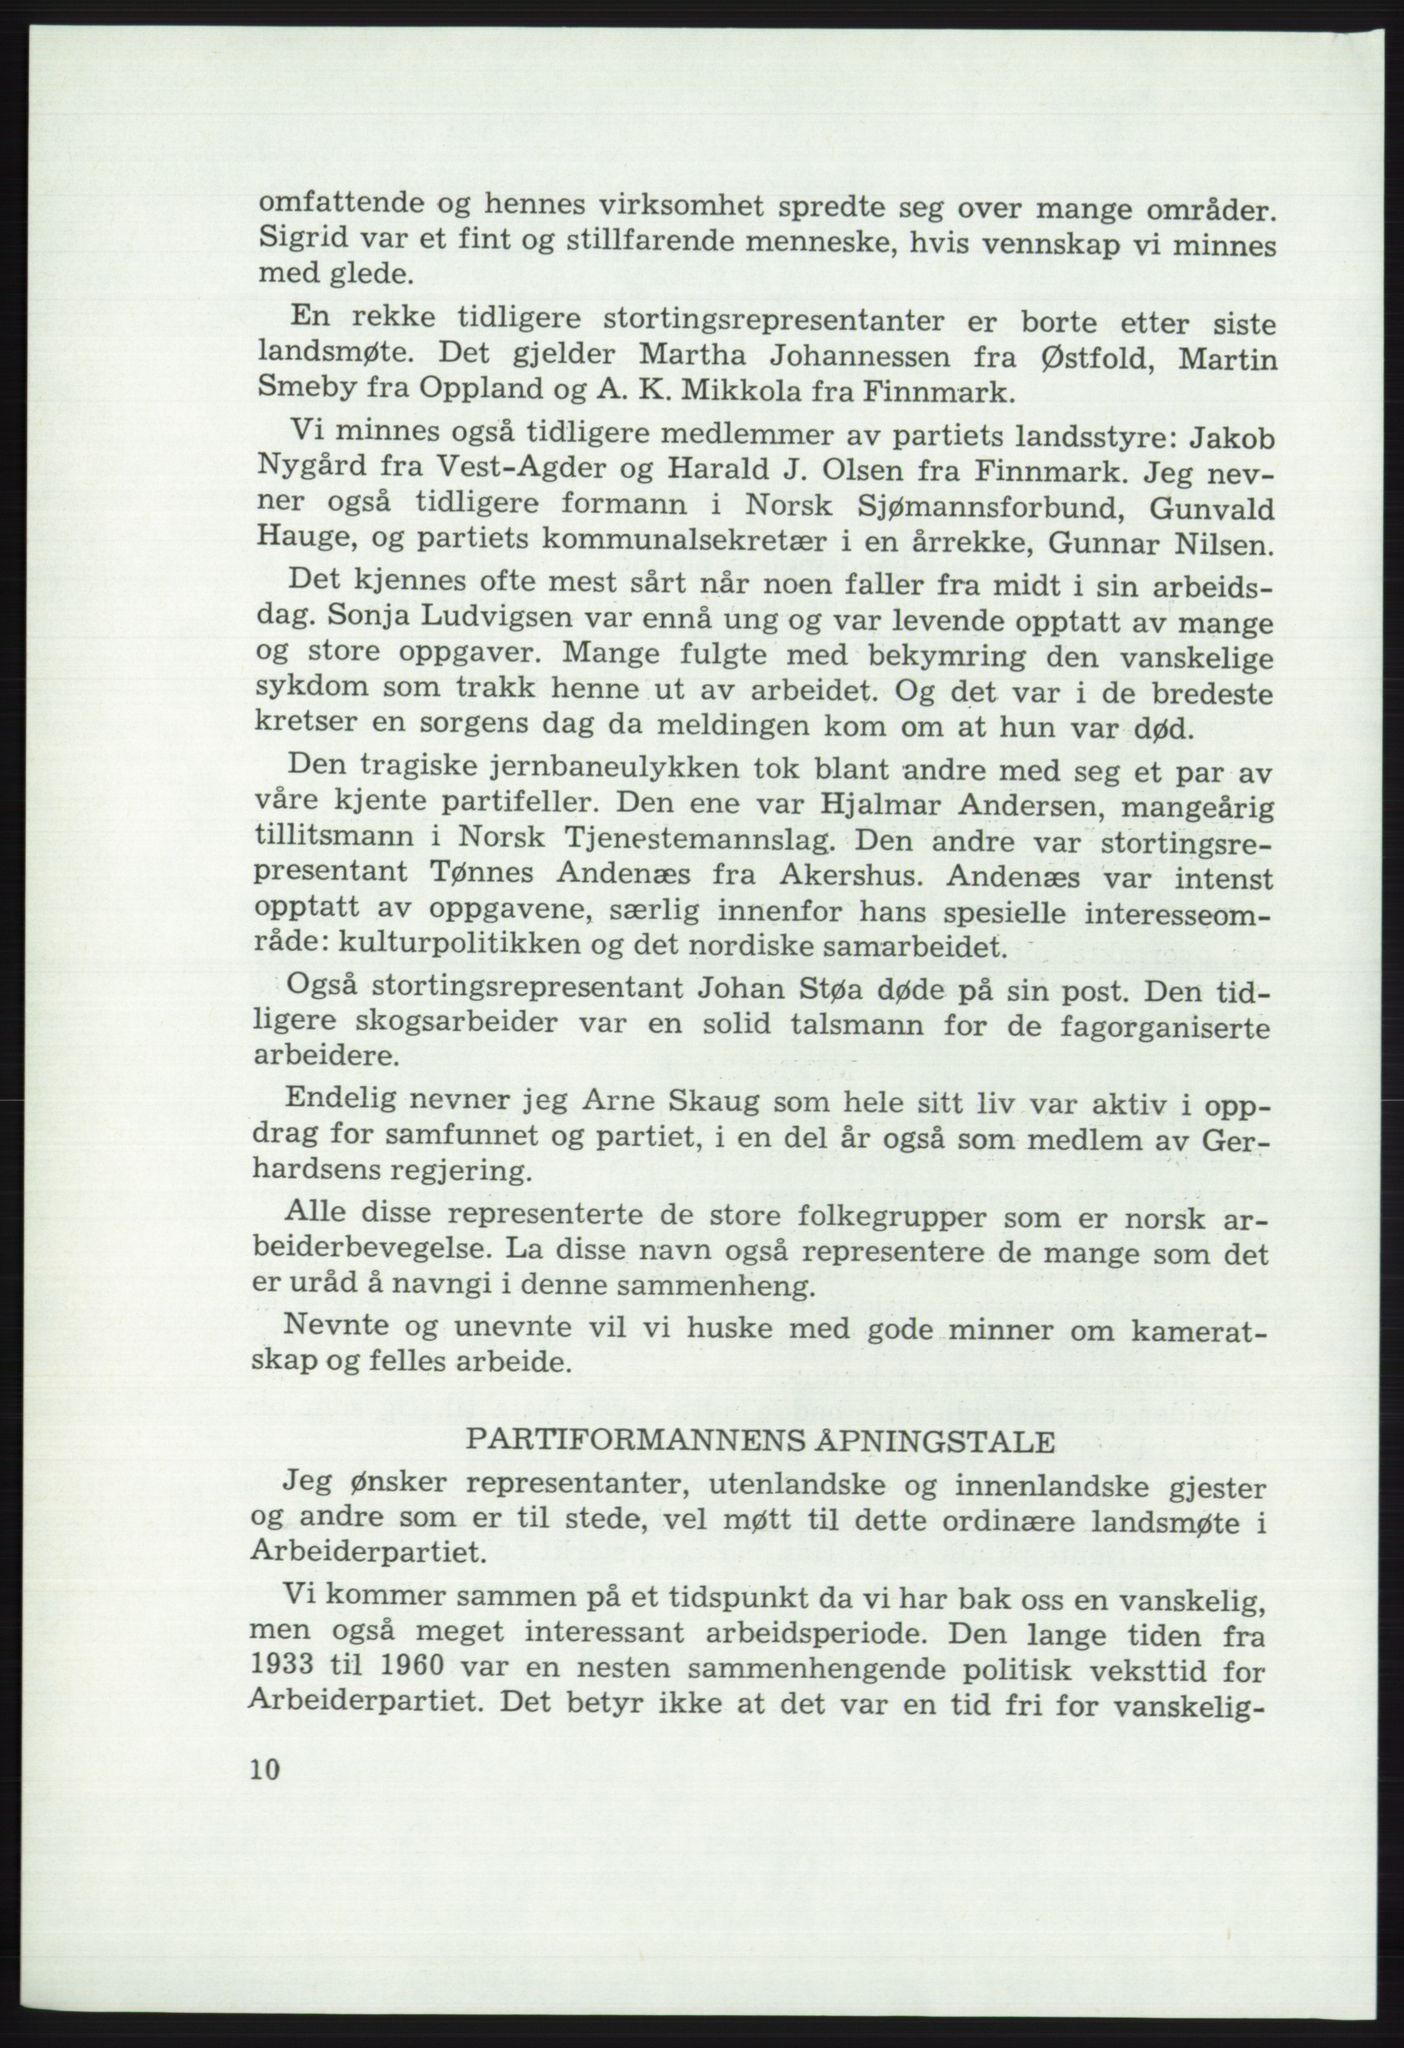 Det norske Arbeiderparti - publikasjoner, AAB/-/-/-: Protokoll over forhandlingene på det 46. ordinære landsmøte 20.-23. april 1975, 1975, p. 10